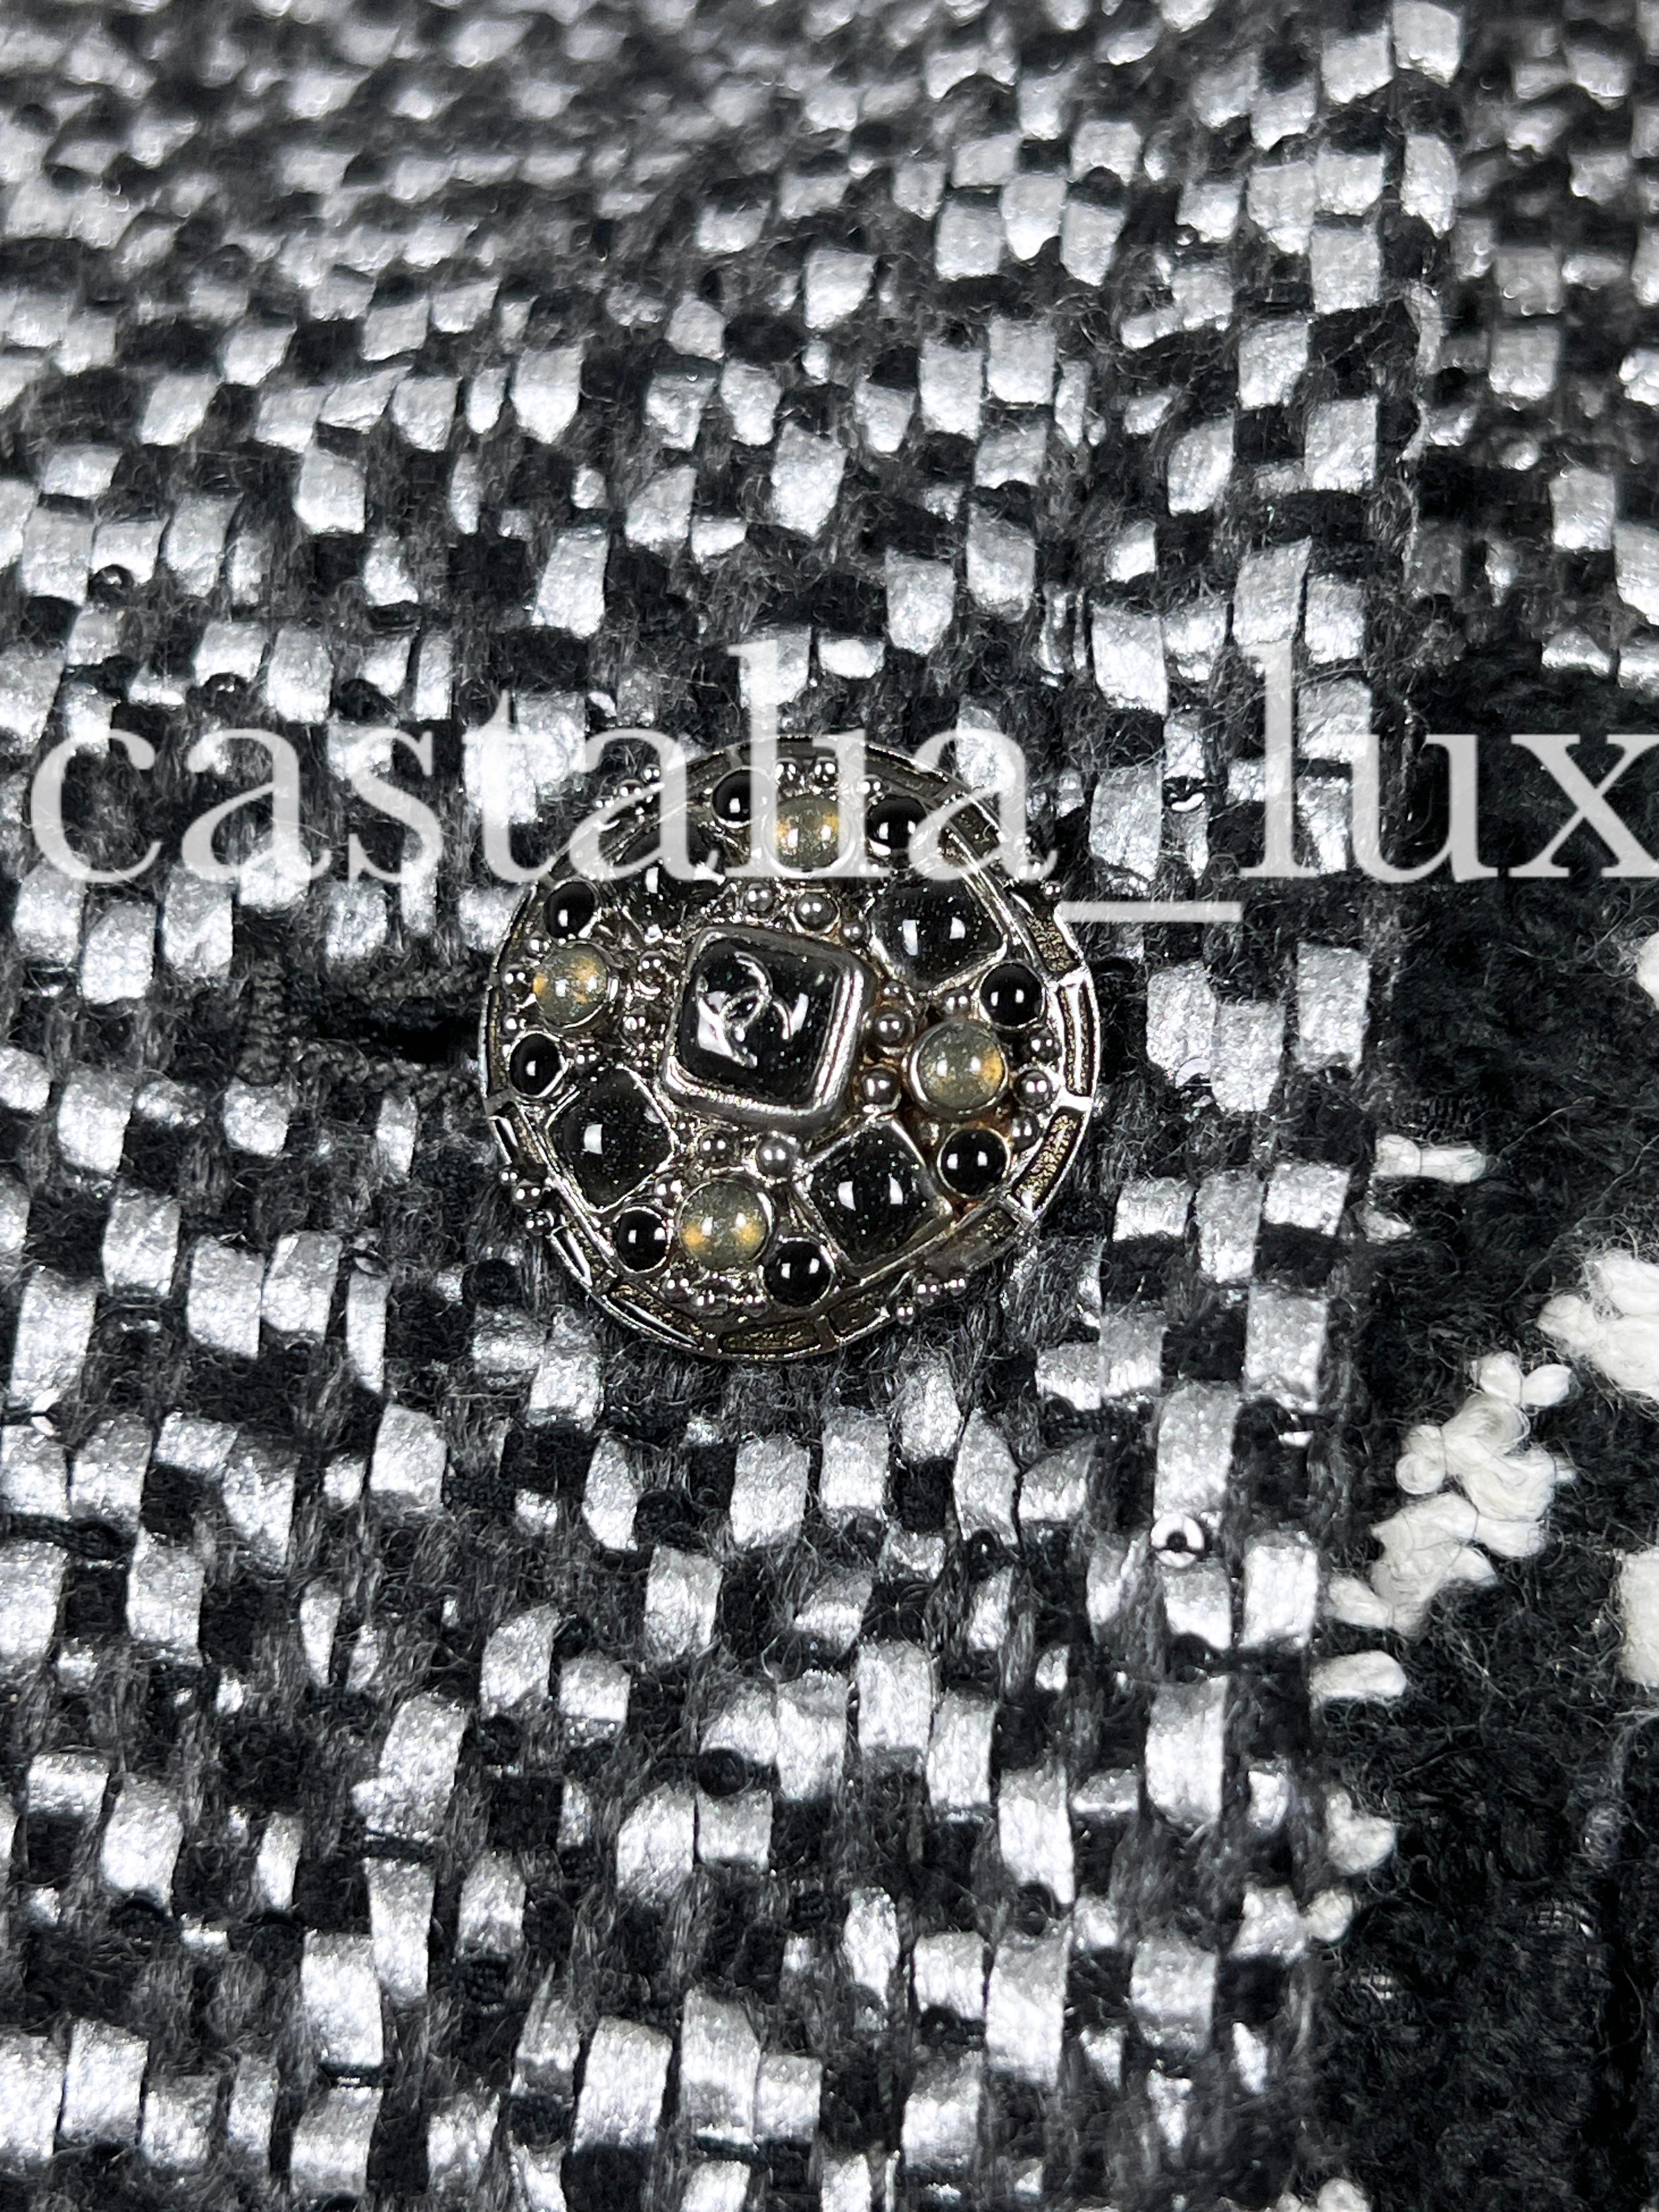 Neuer super stylischer Chanel Lesage Tweed Parka Mantel mit CC Jewel Buttons!
- aus hochwertigem Tweed in Schwarz/Weiß mit Hahnentrittmuster
- aus gewebtem Lesage-Tweed, von Hand mit kleinen Pailletten verziert! In natura sehen sie so erhaben aus
-